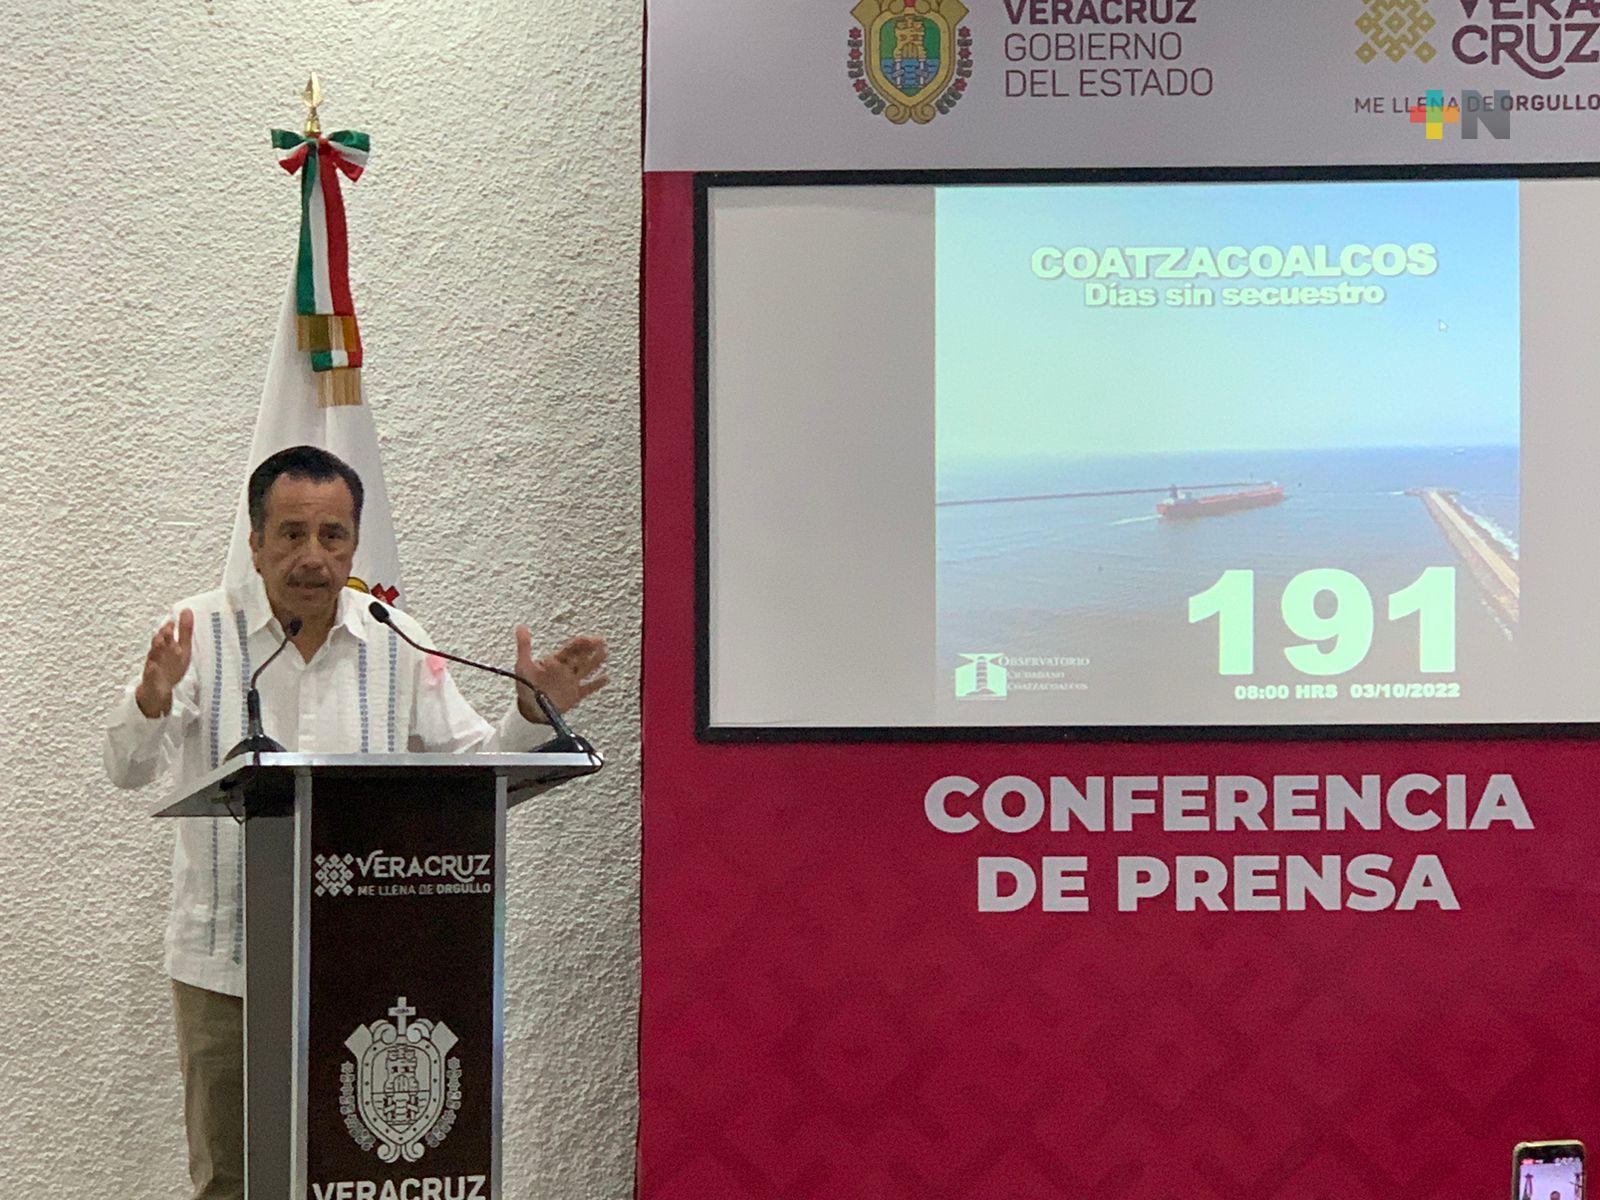 191 días sin secuestro en Coatzacoalcos y sólo dos homicidios en 147, destaca el Gobernador